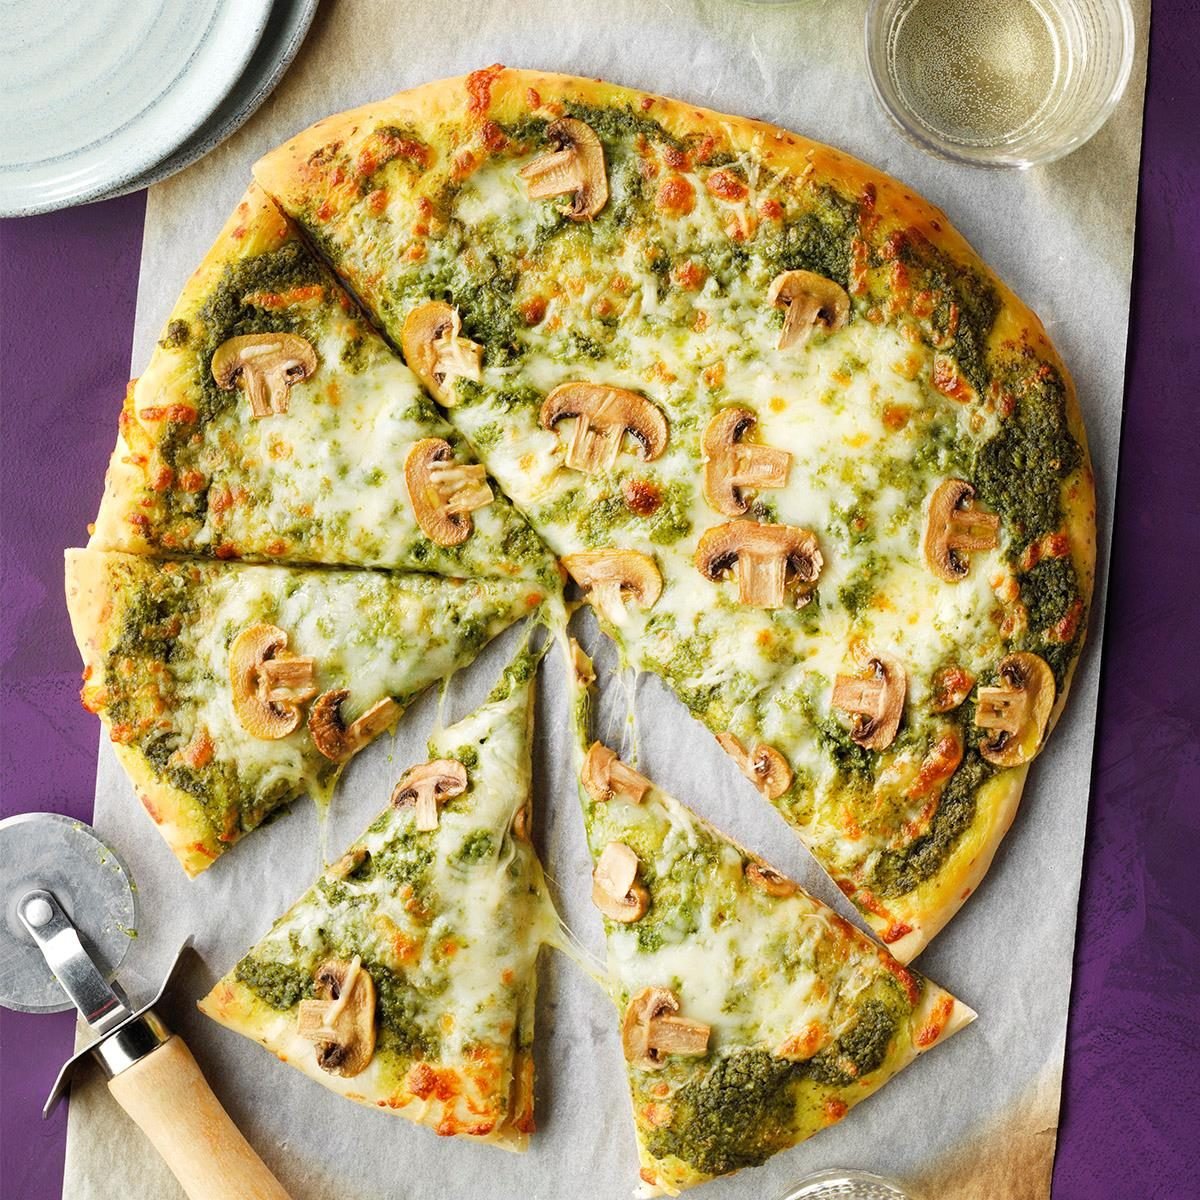 Saturday: Easy Pesto Pizza